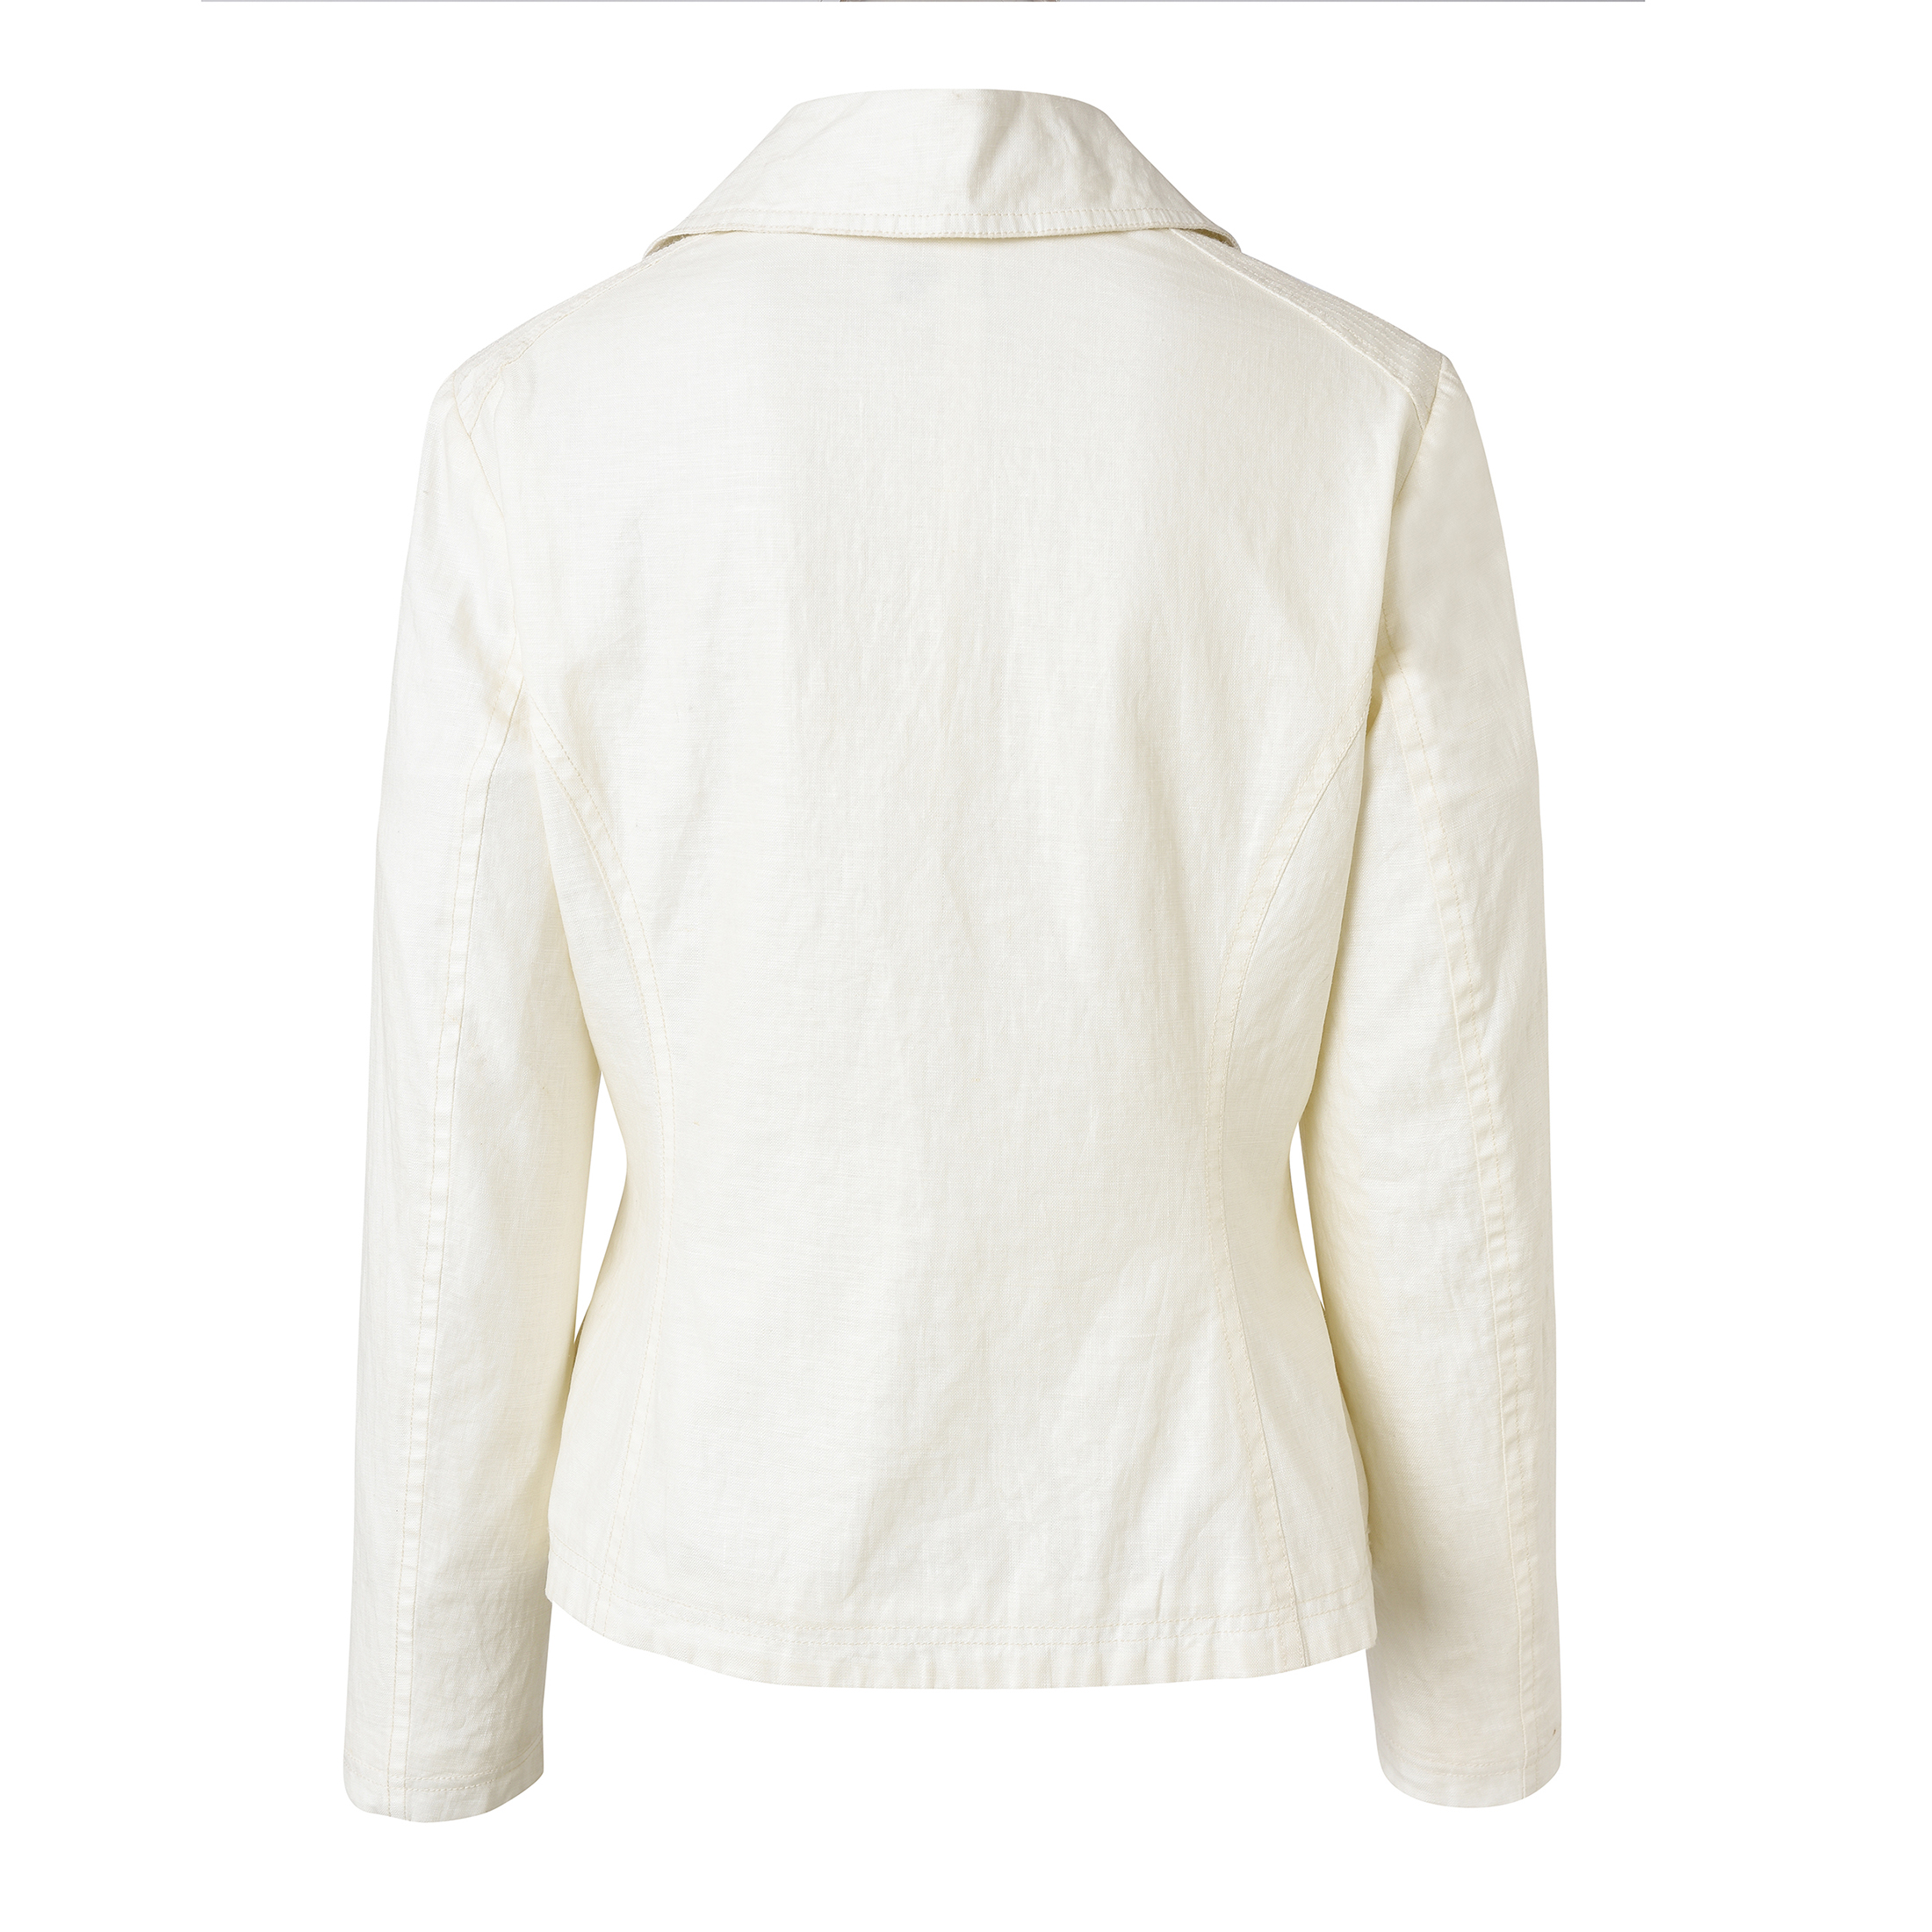 New Designed Jacket - Women\'s Fashionable Long Sleeve Cotton Jacket